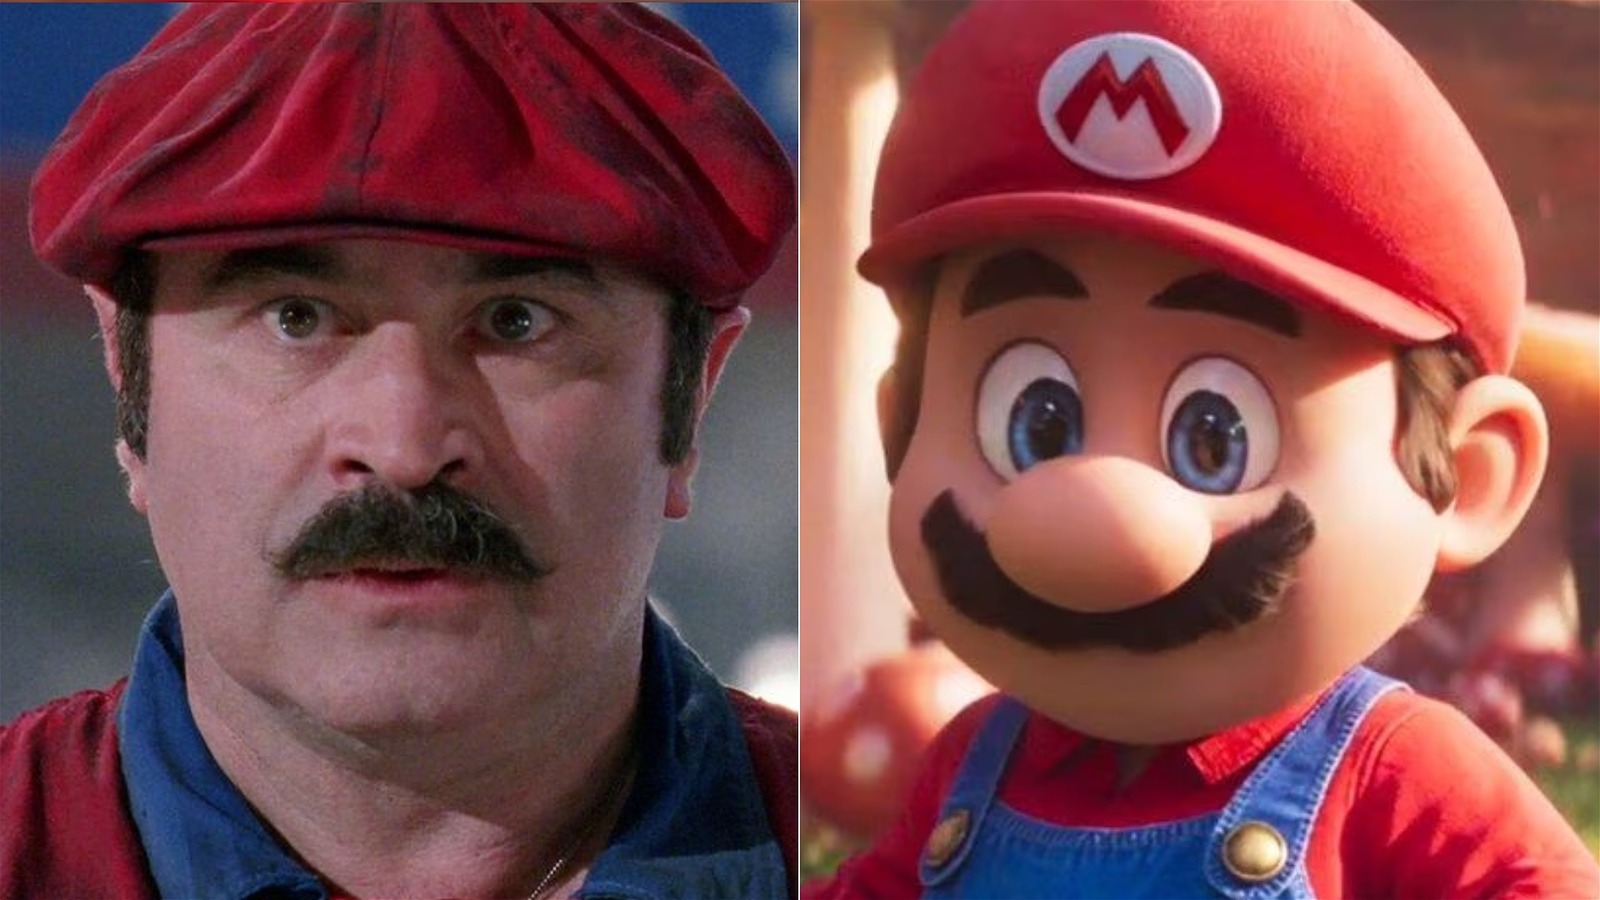 Where Can I Watch the Original Super Mario Bros Movie 1993